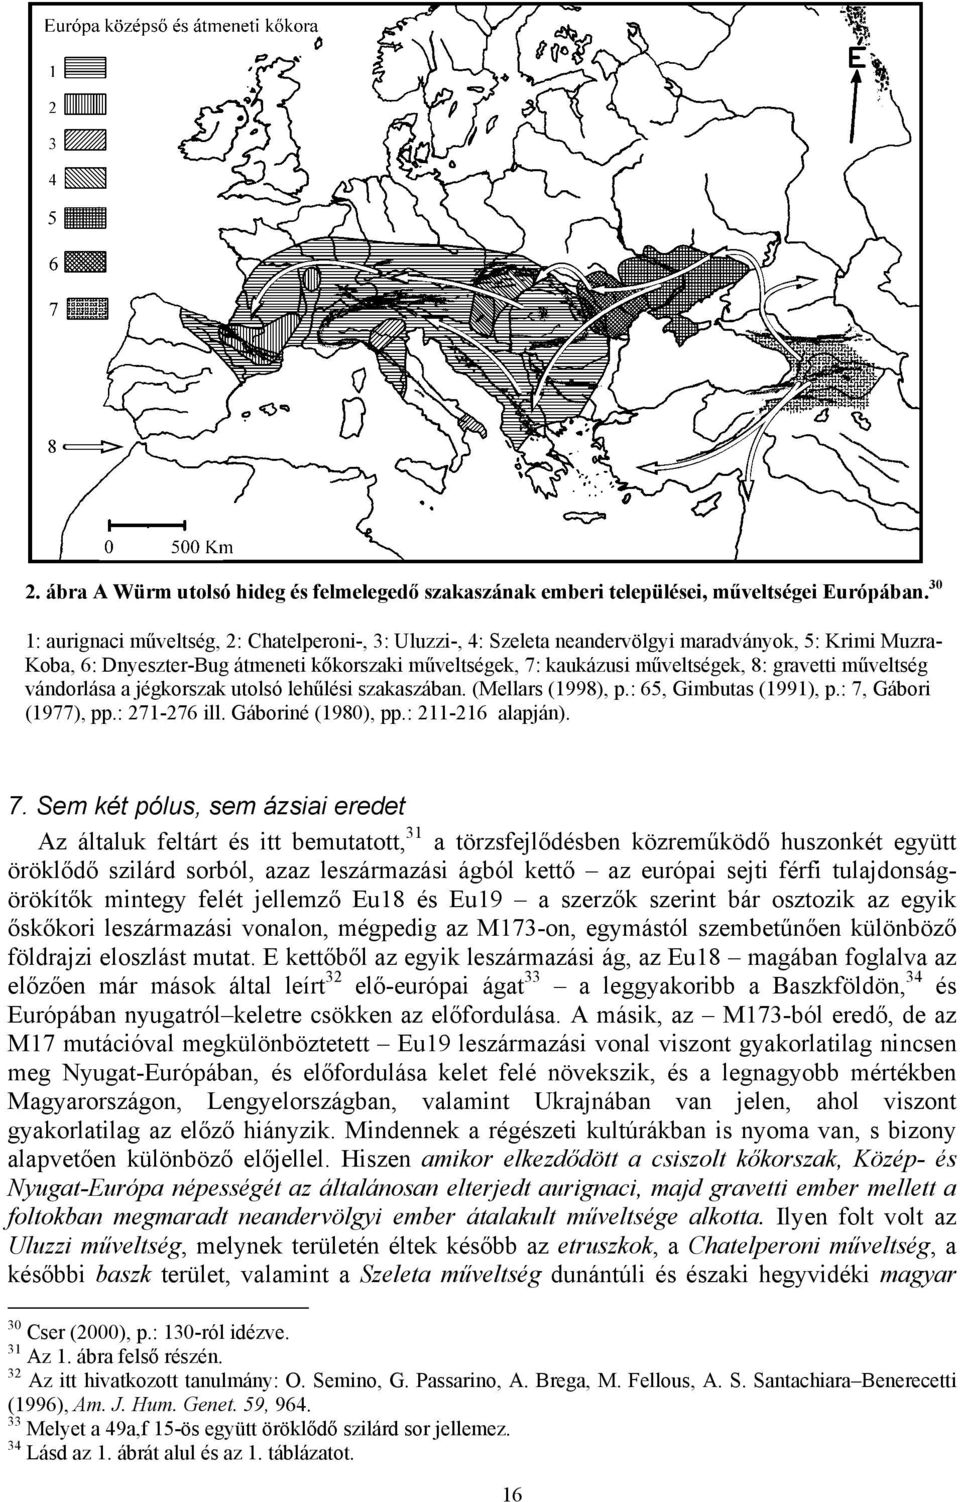 gravetti műveltség vándorlása a jégkorszak utolsó lehűlési szakaszában. (Mellars (1998), p.: 65, Gimbutas (1991), p.: 7,